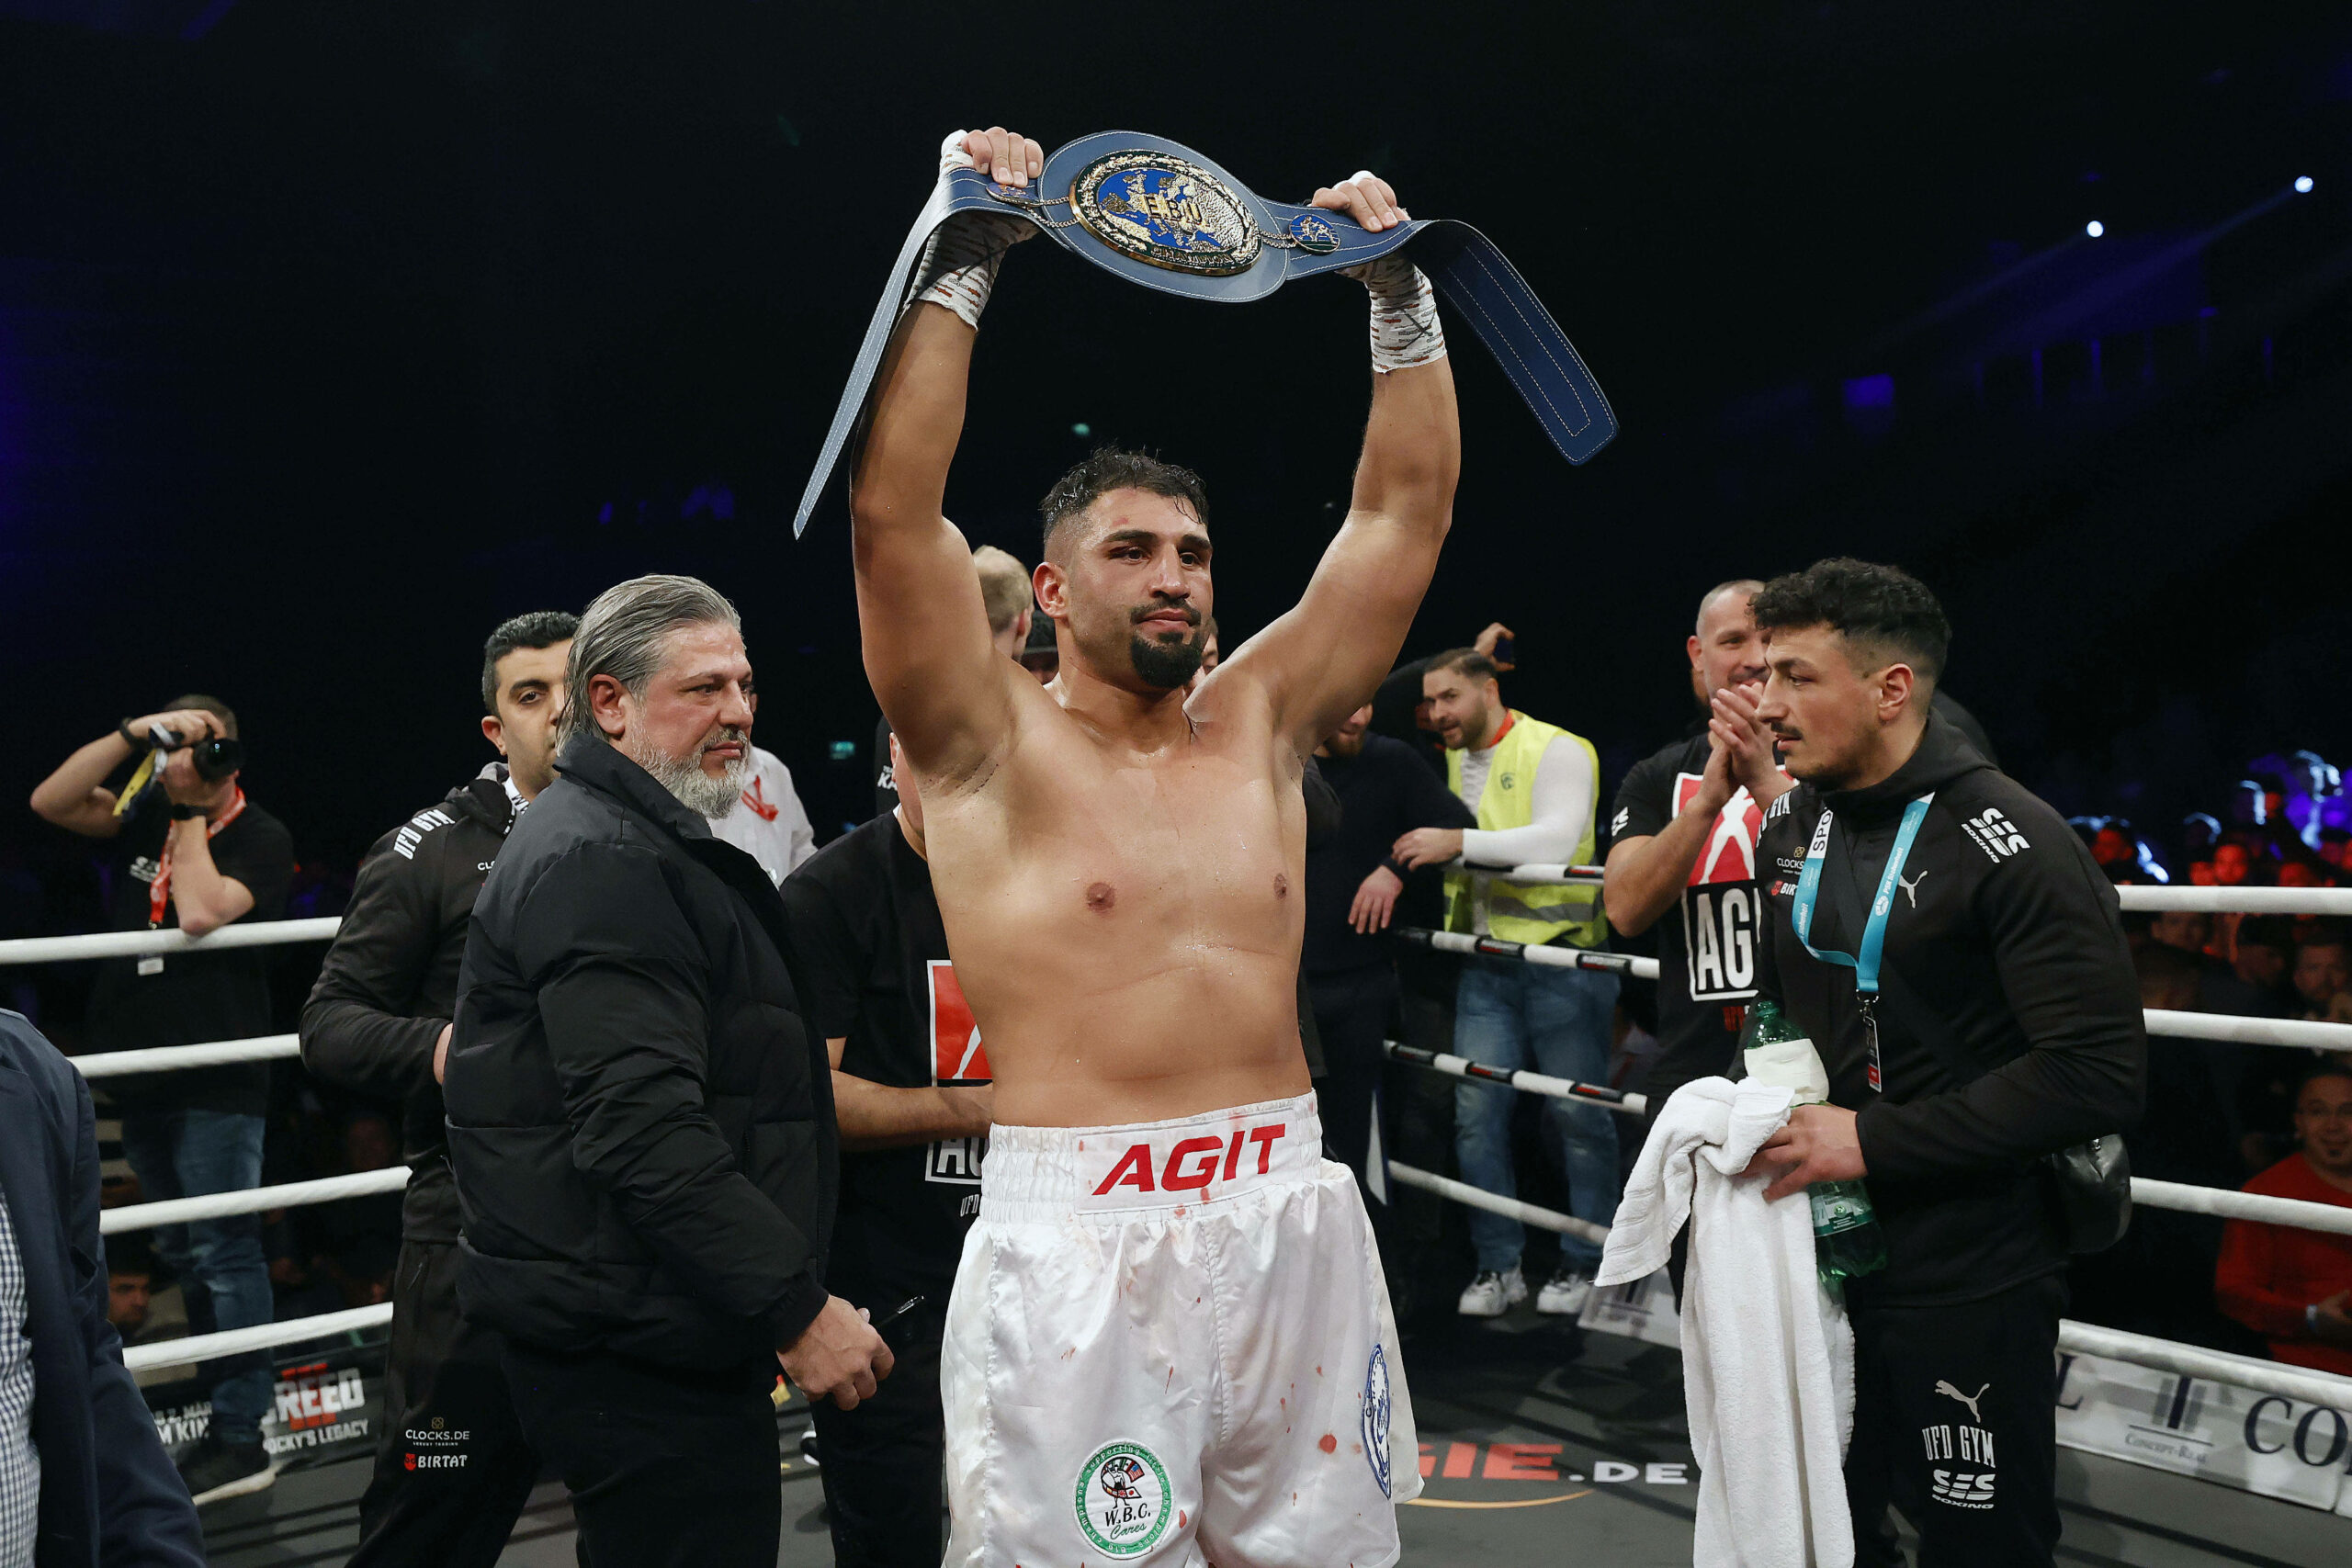 Box-Europameister Kabayel hält seinen Titelgürtel in die Höhe